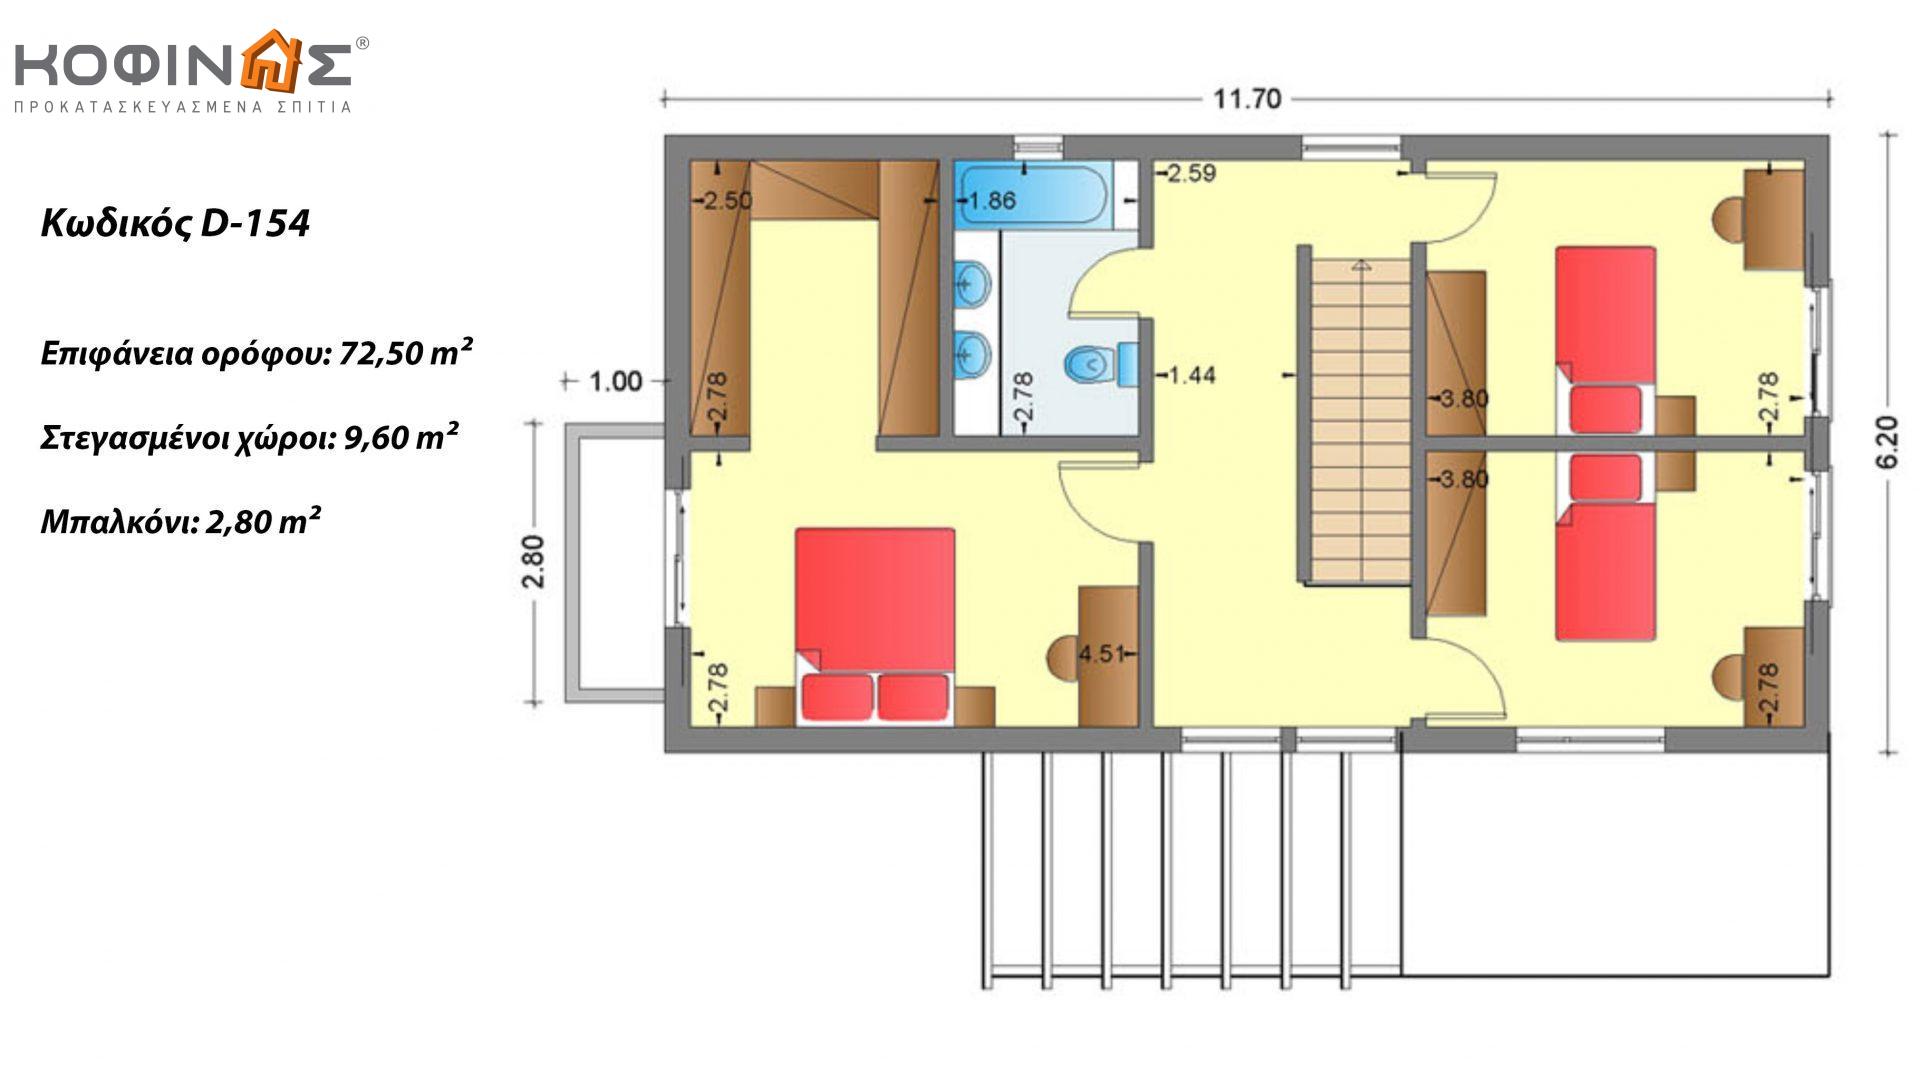 Διώροφη Κατοικία D-154, συνολικής επιφάνειας 154,70 τ.μ., συνολική επιφάνεια στεγασμένων χώρων 18.15 τ.μ., μπαλκόνι 2.80 τ.μ.